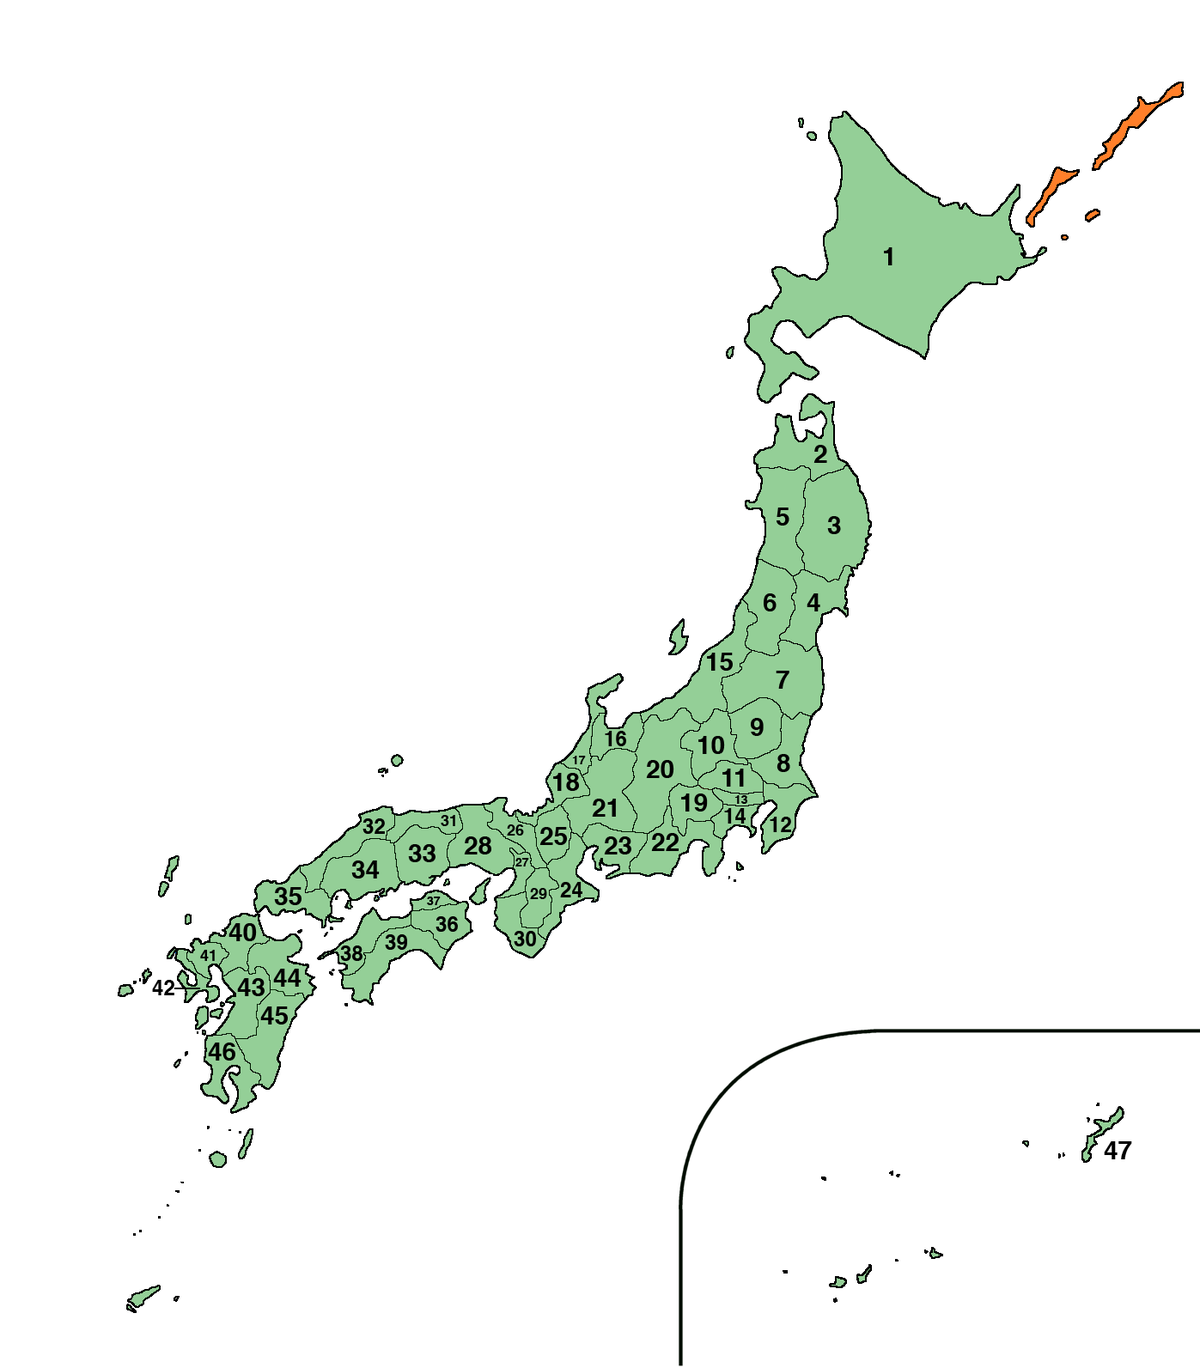 Wp Ryu 都道府県 Wikimedia Incubator